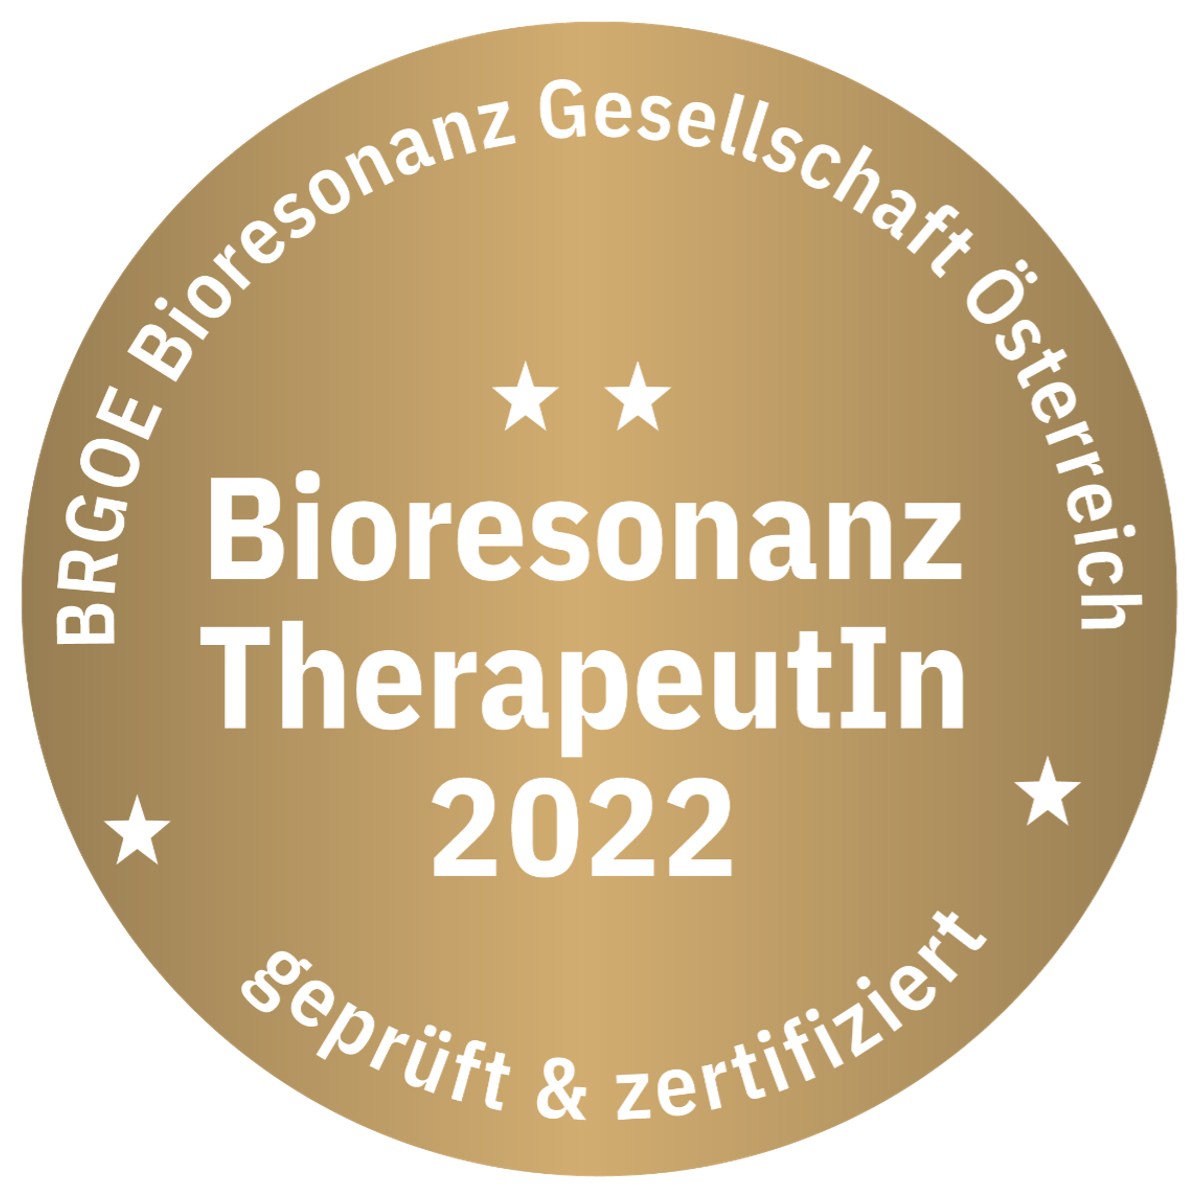 Bioresonanz-Therapeutin 2022 